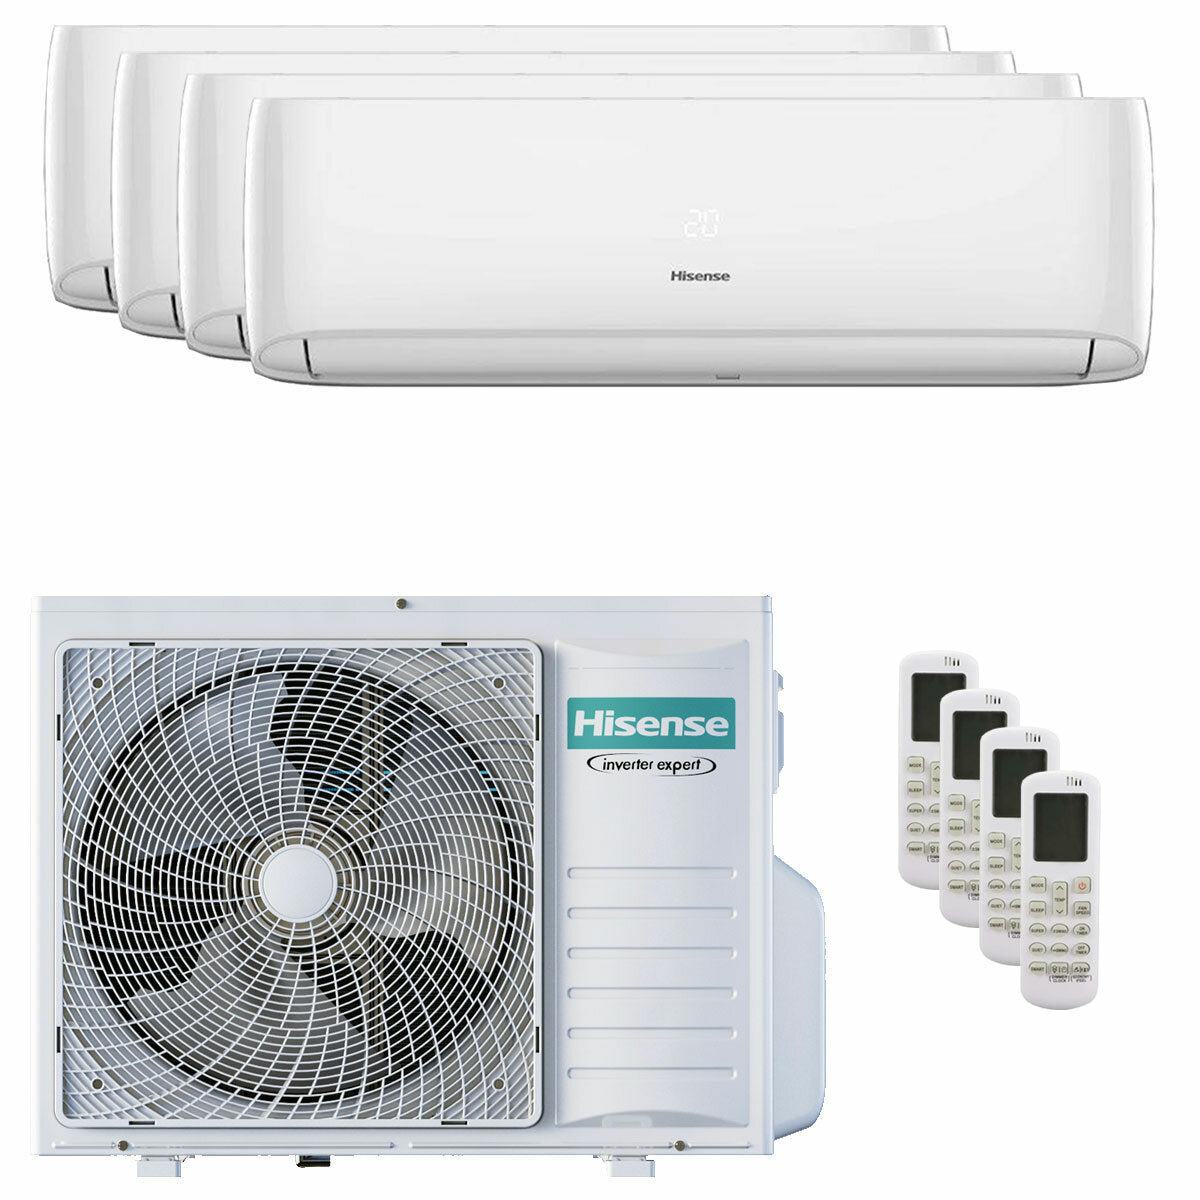 Hisense Hi-Comfort quadri split air conditioner 7000+7000+12000+12000 BTU inverter A++ wifi outdoor unit 8 kW